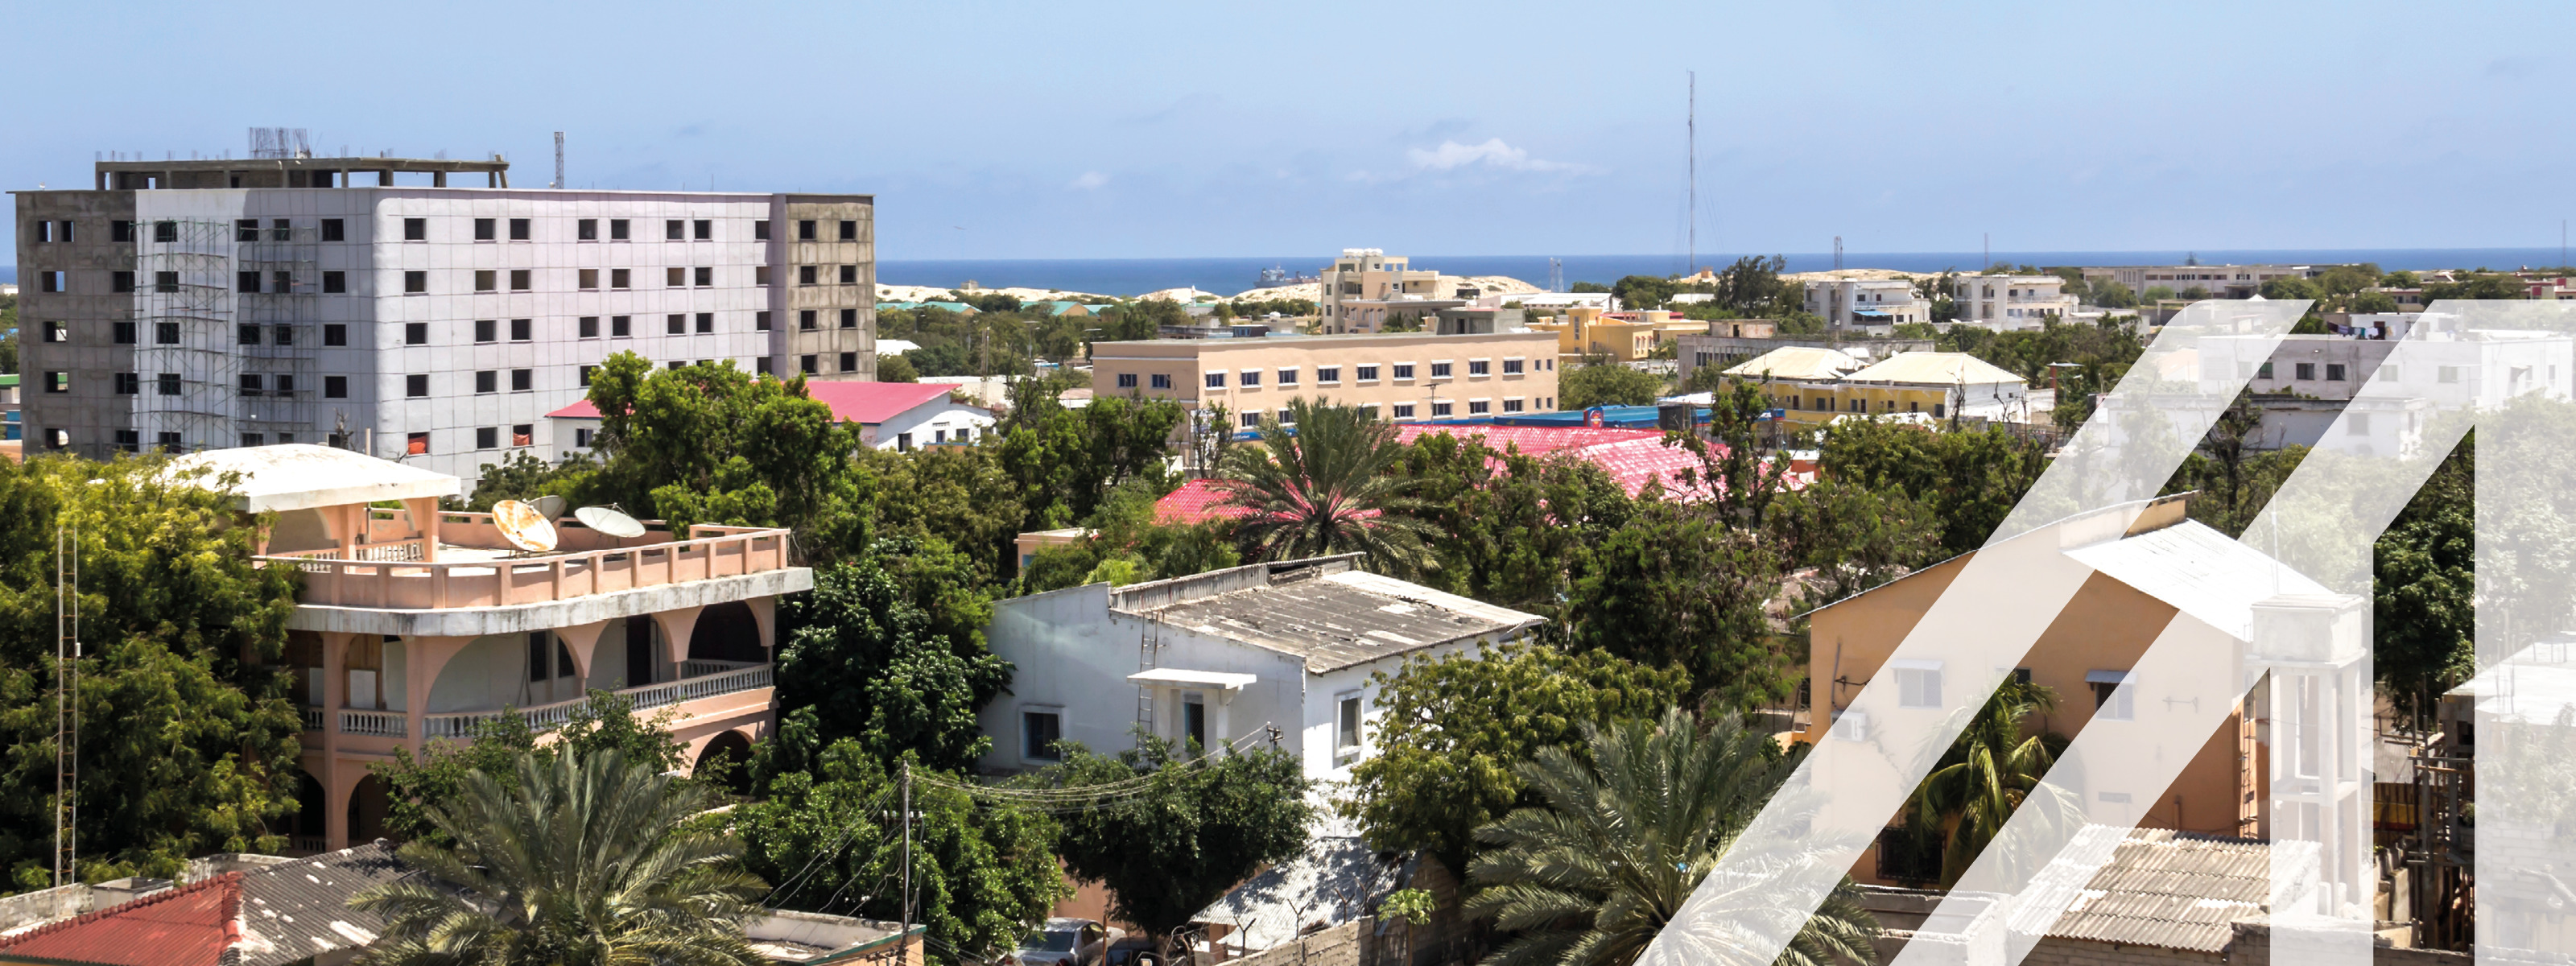 Stadtansicht von Mogadischu, Hauptstadt von Somalia: Zwischen Häusern Bäume, im Hintergrund Meer unter blauem Himmel
